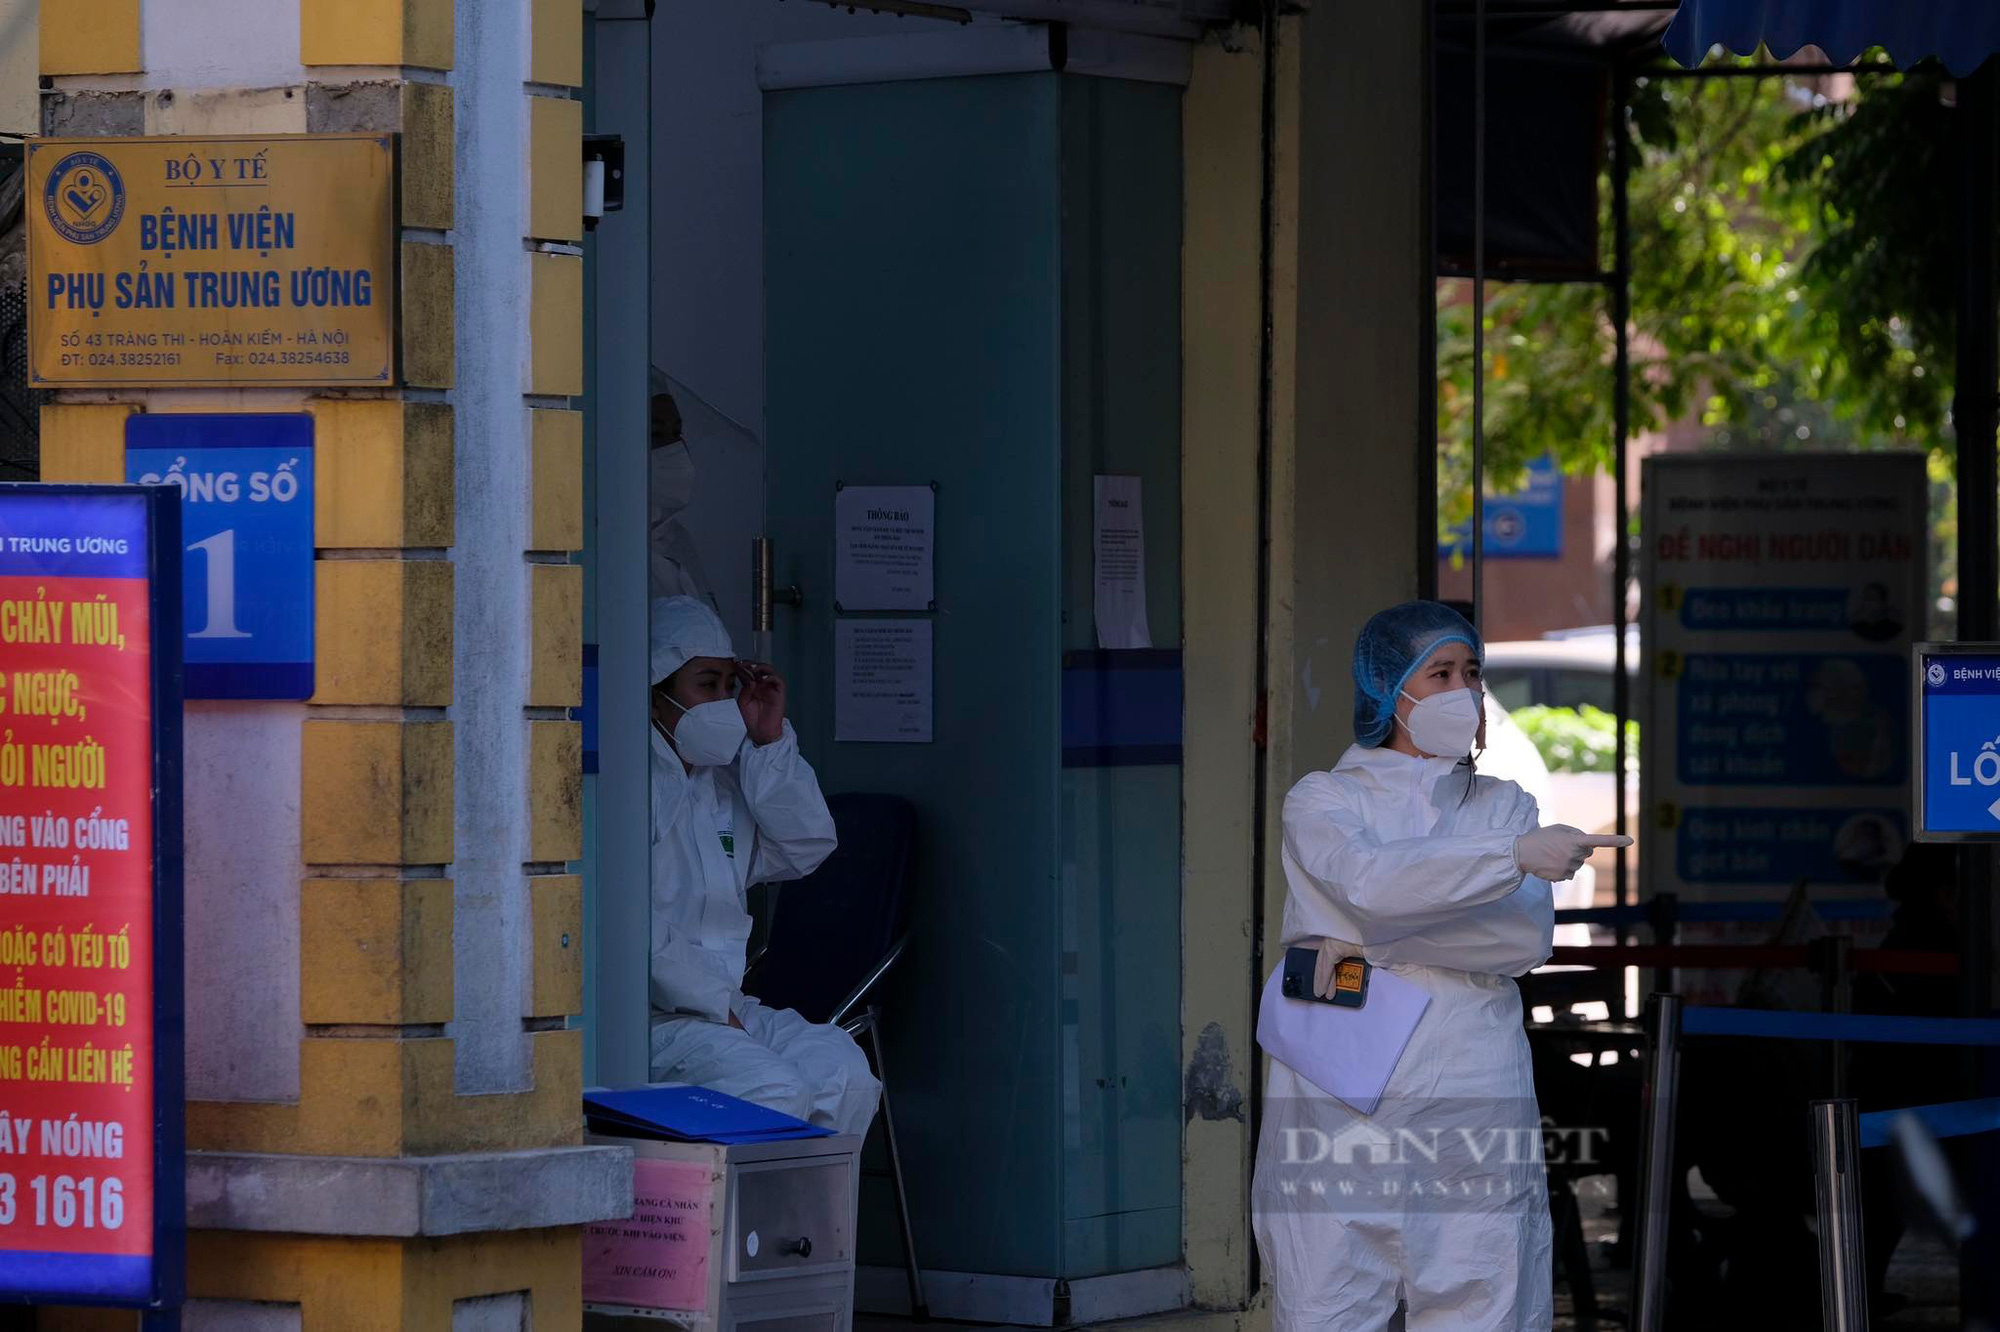 Hà Nội: Phát hiện chùm 15 ca dương tính SARS-CoV-2, tìm khẩn người đến Bệnh viện Phụ sản Trung ương - Ảnh 2.